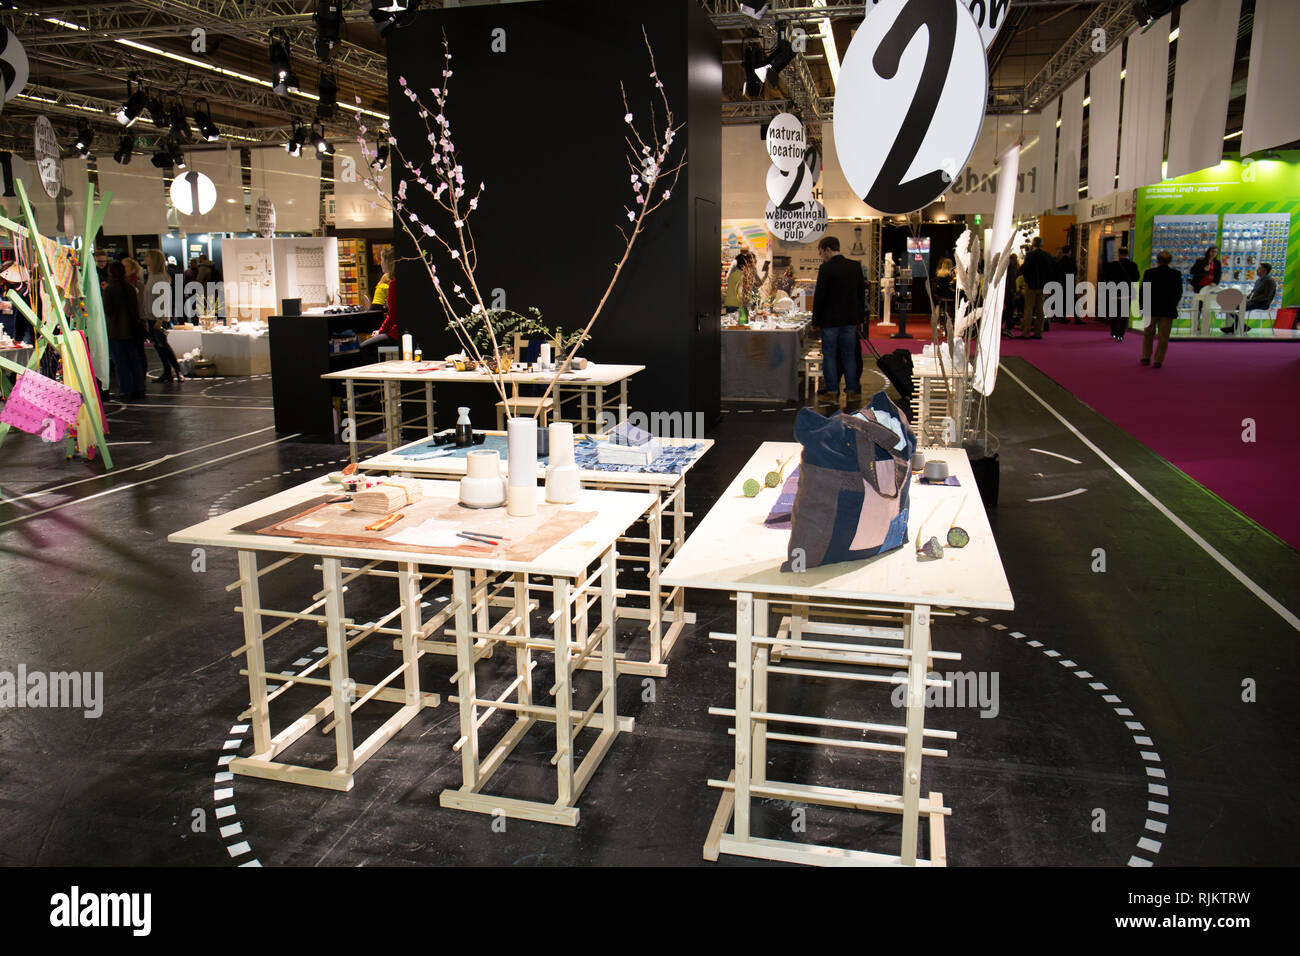 Impressions du monde plus grand salon international de l'artisanat et bricolage les tendances, exigences de l'artiste à Frankfurt am Main Allemagne en janvier 2019 Banque D'Images